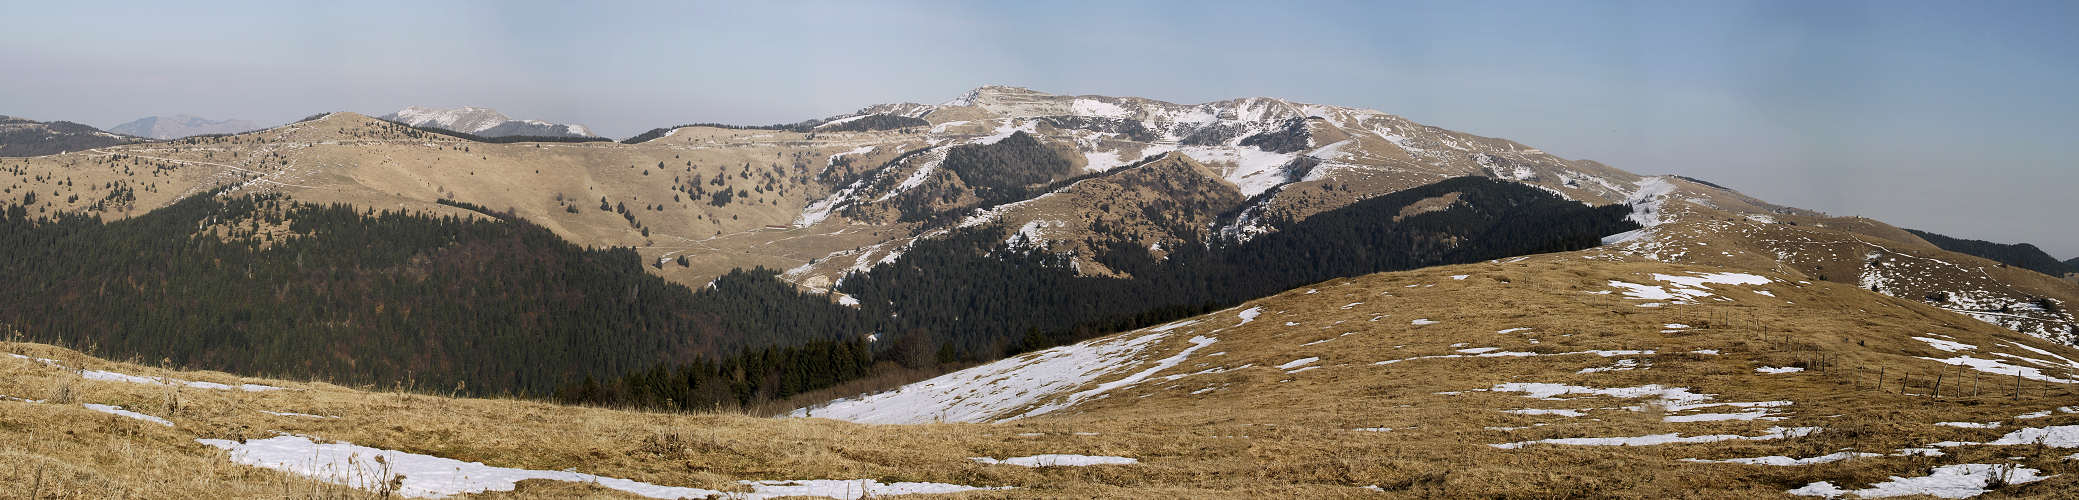 Monte Asolone, Monte Grappa - fotografia panoramica